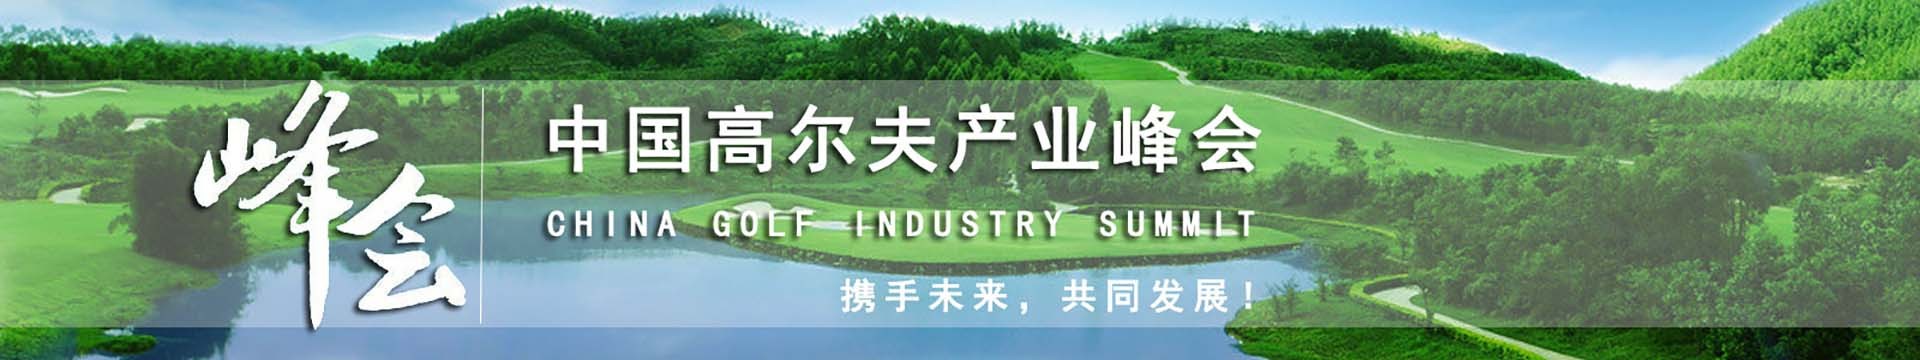 第十二届中国高尔夫产业峰会暨2017中国高尔夫行业发展论坛